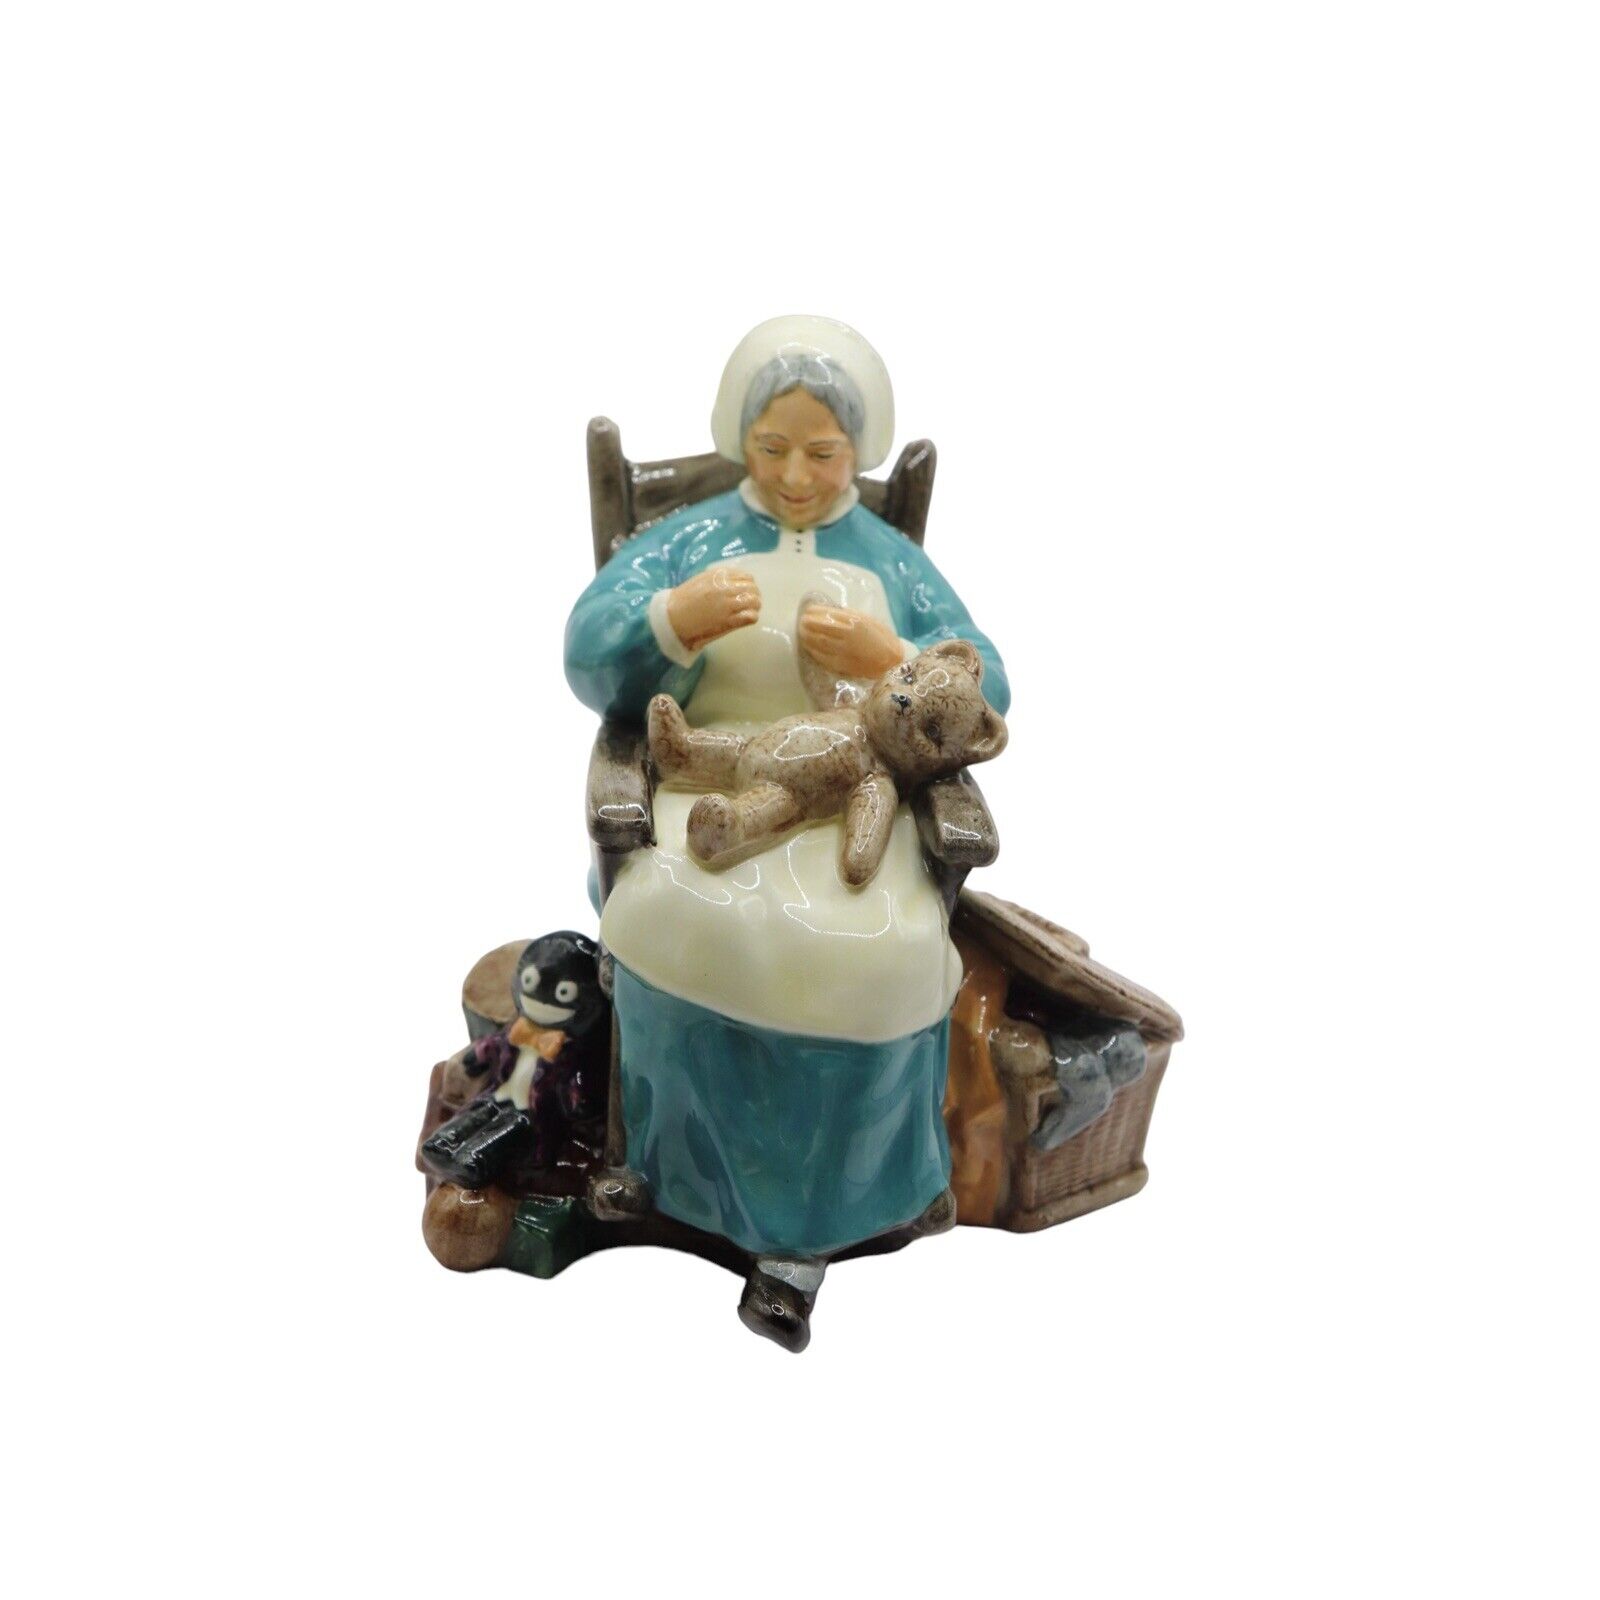 Royal Doulton “Nanny” Figurine - HN2221